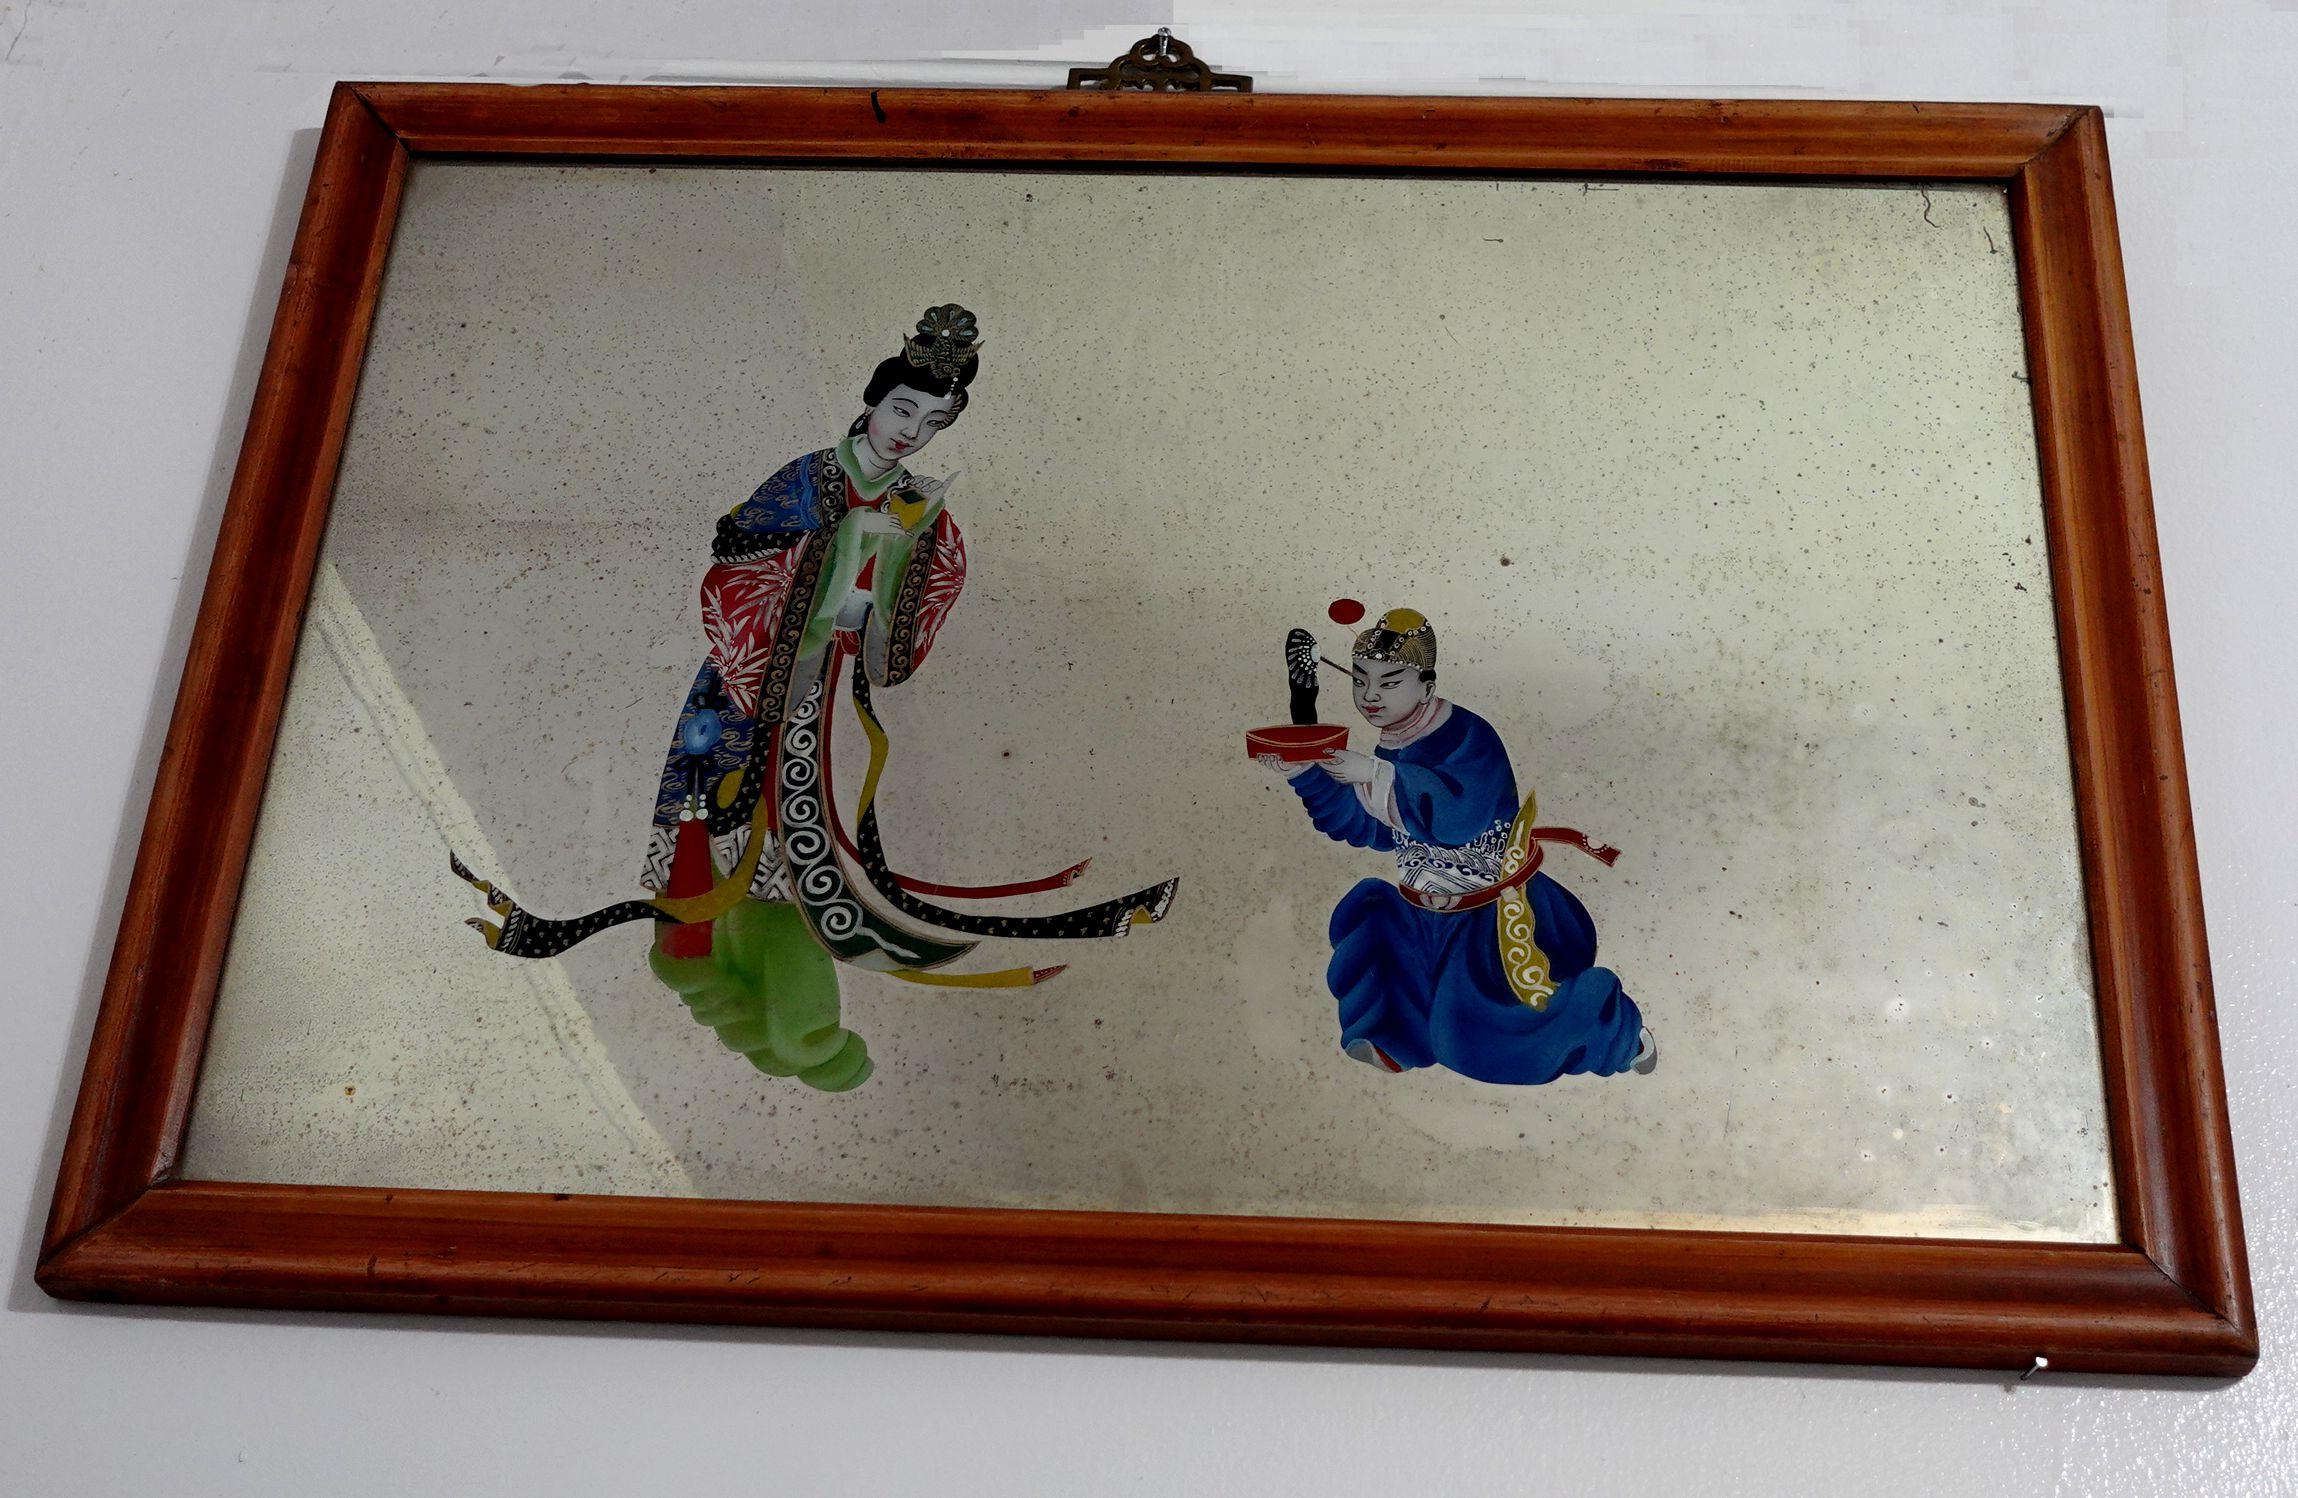 Ein großes, charmantes chinesisches Hinterglasbild aus dem 19. Jahrhundert, das einen Mann darstellt, der um die Ehe bittet. 

Umgekehrte Glasbilder kamen im 18. Jahrhundert in Mode. Die Glastafeln wurden auf dem Seeweg von Europa nach China